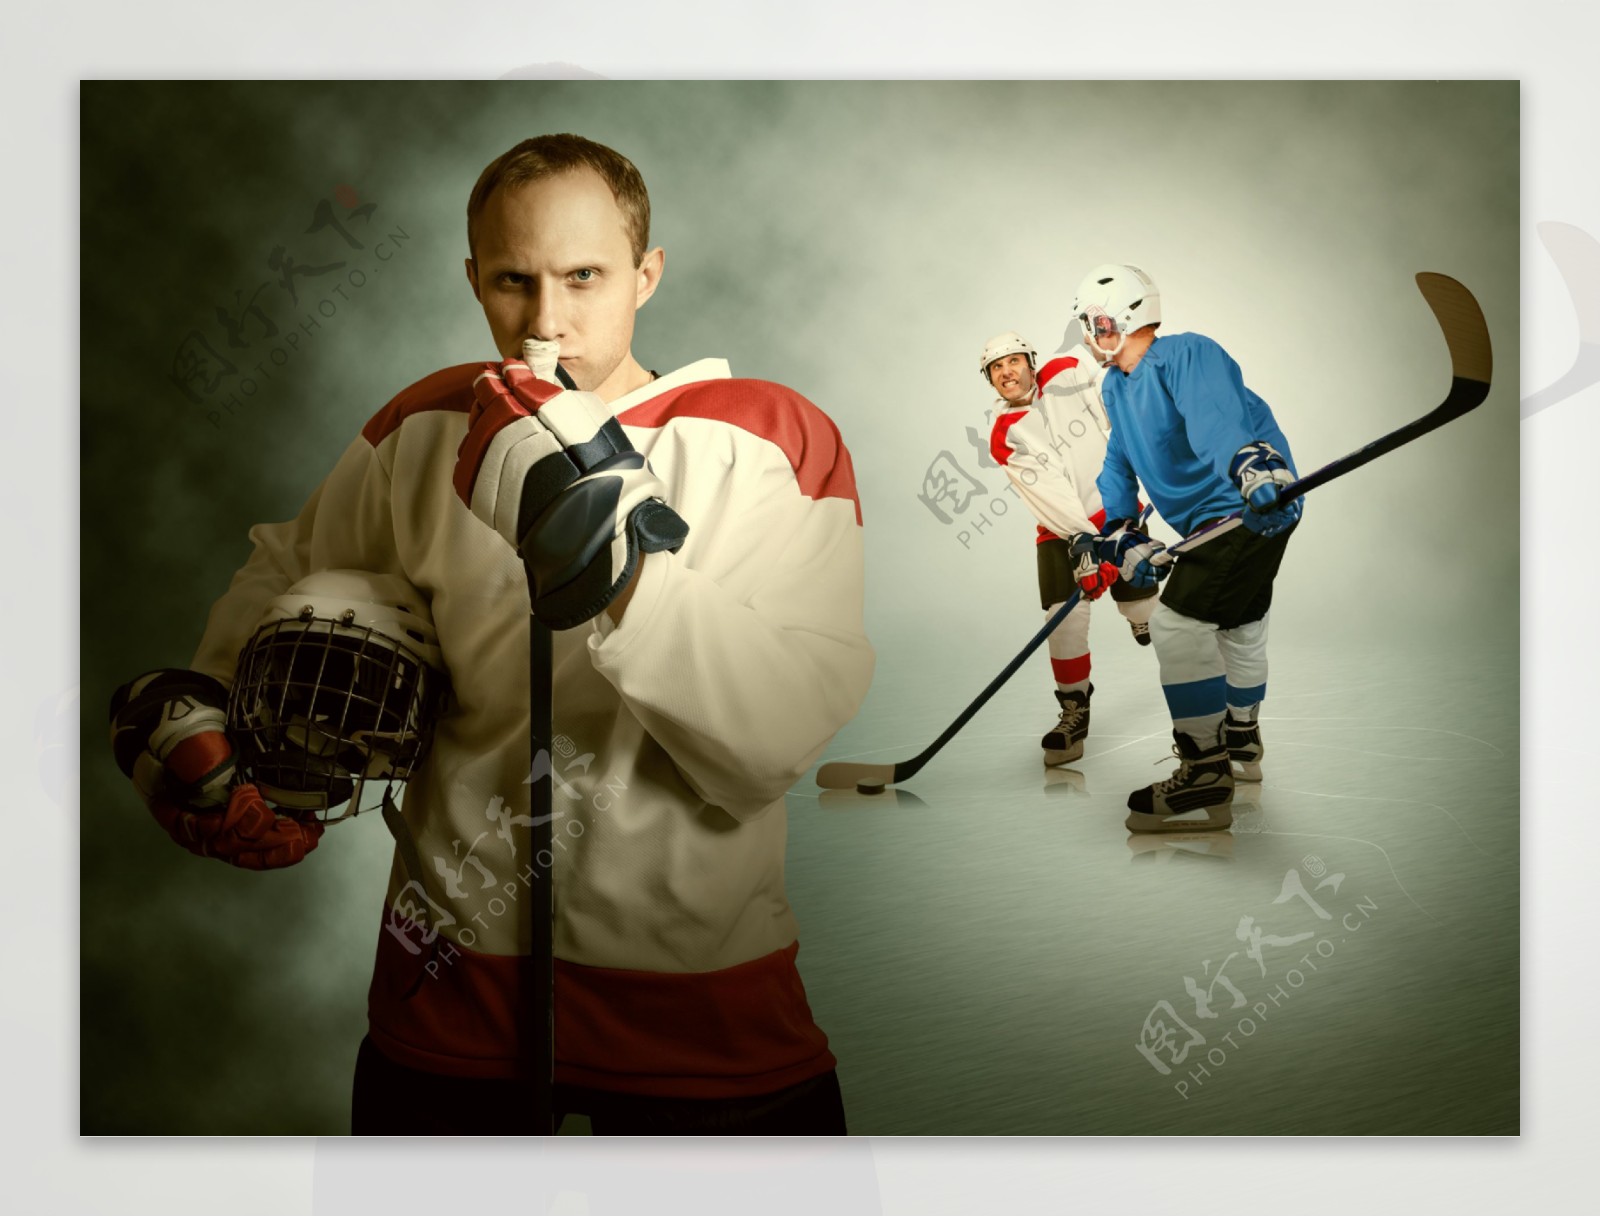 冰球运动员和队友图片